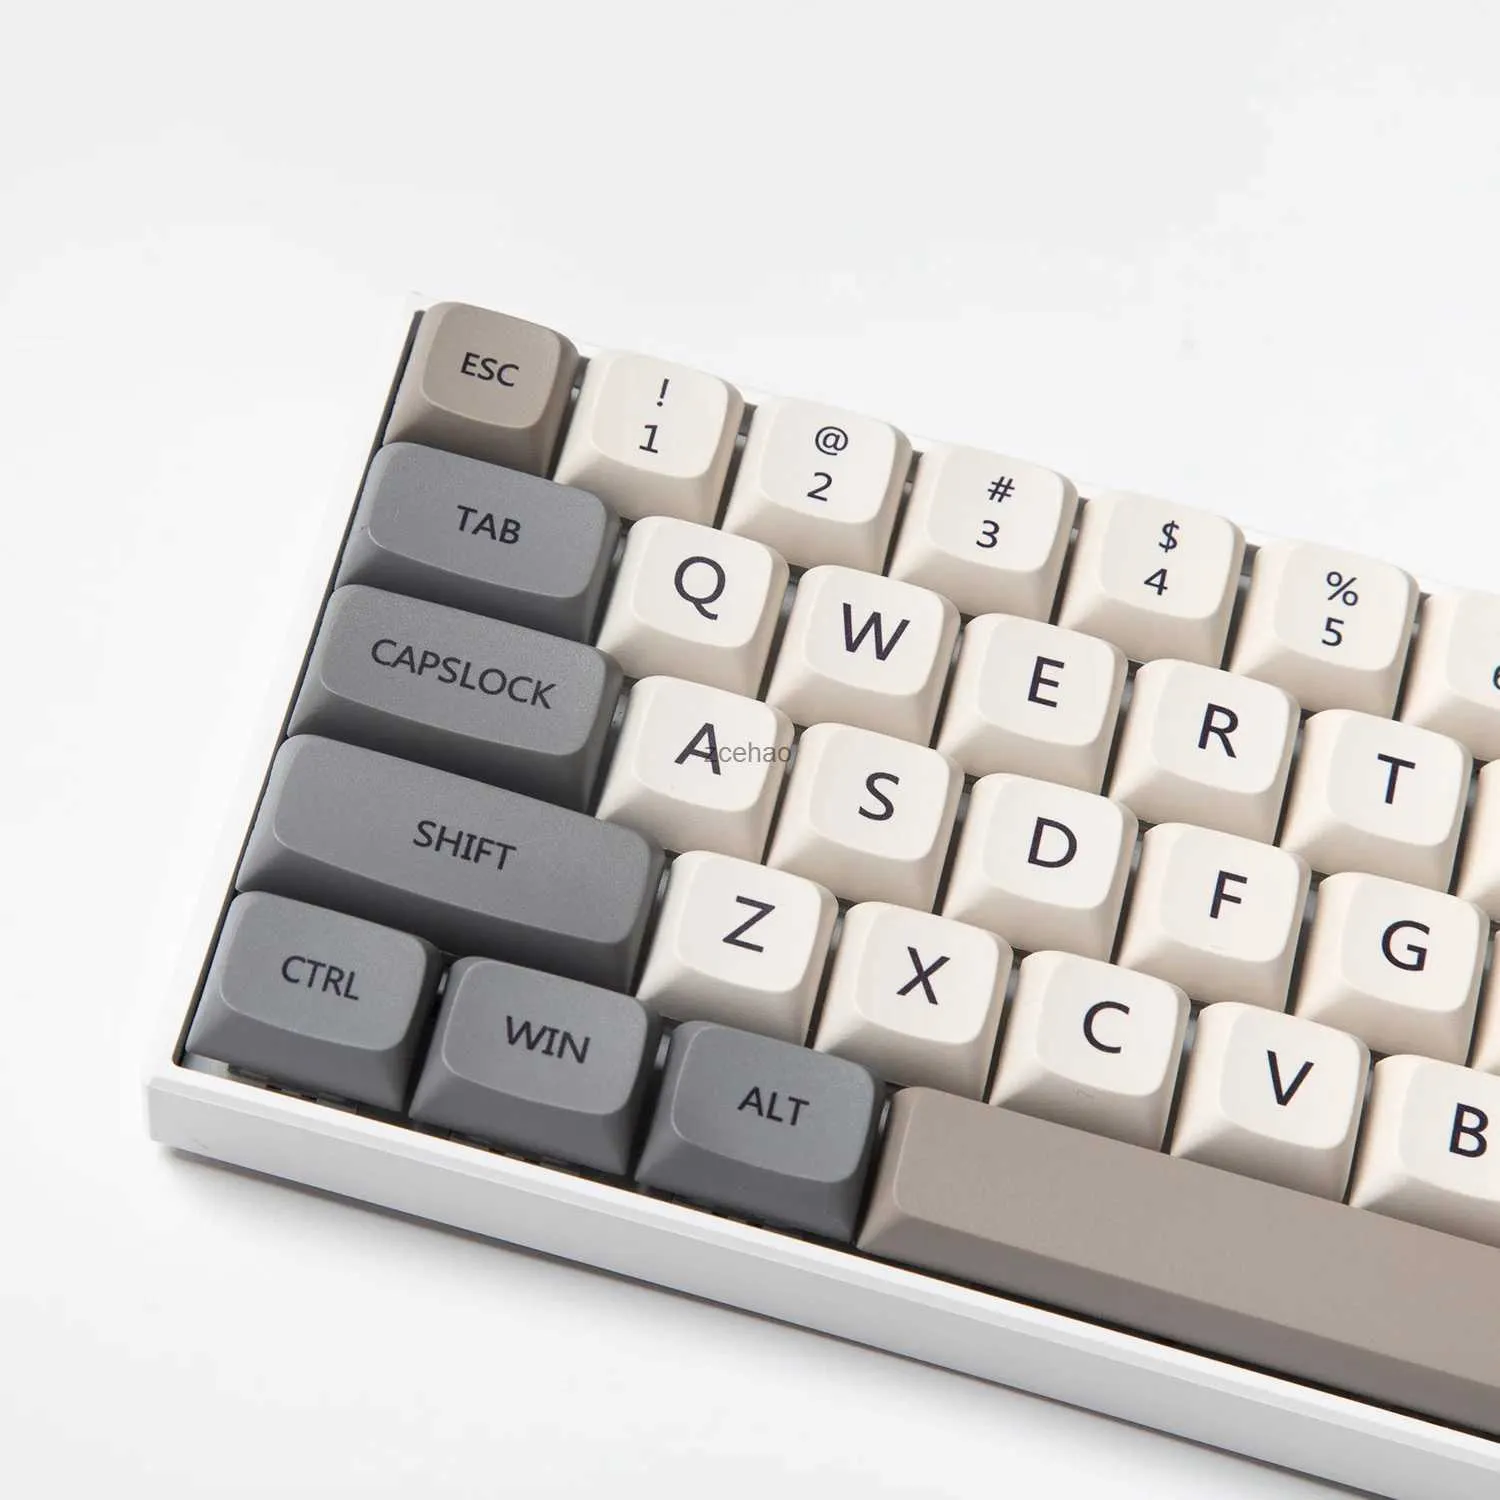 Claviers XDA Profile 120 PBT Keycap DYE-SUB personnalisé minimaliste blanc gris anglais japonais Keycap pour clavier mécanique MX SwitchL240105